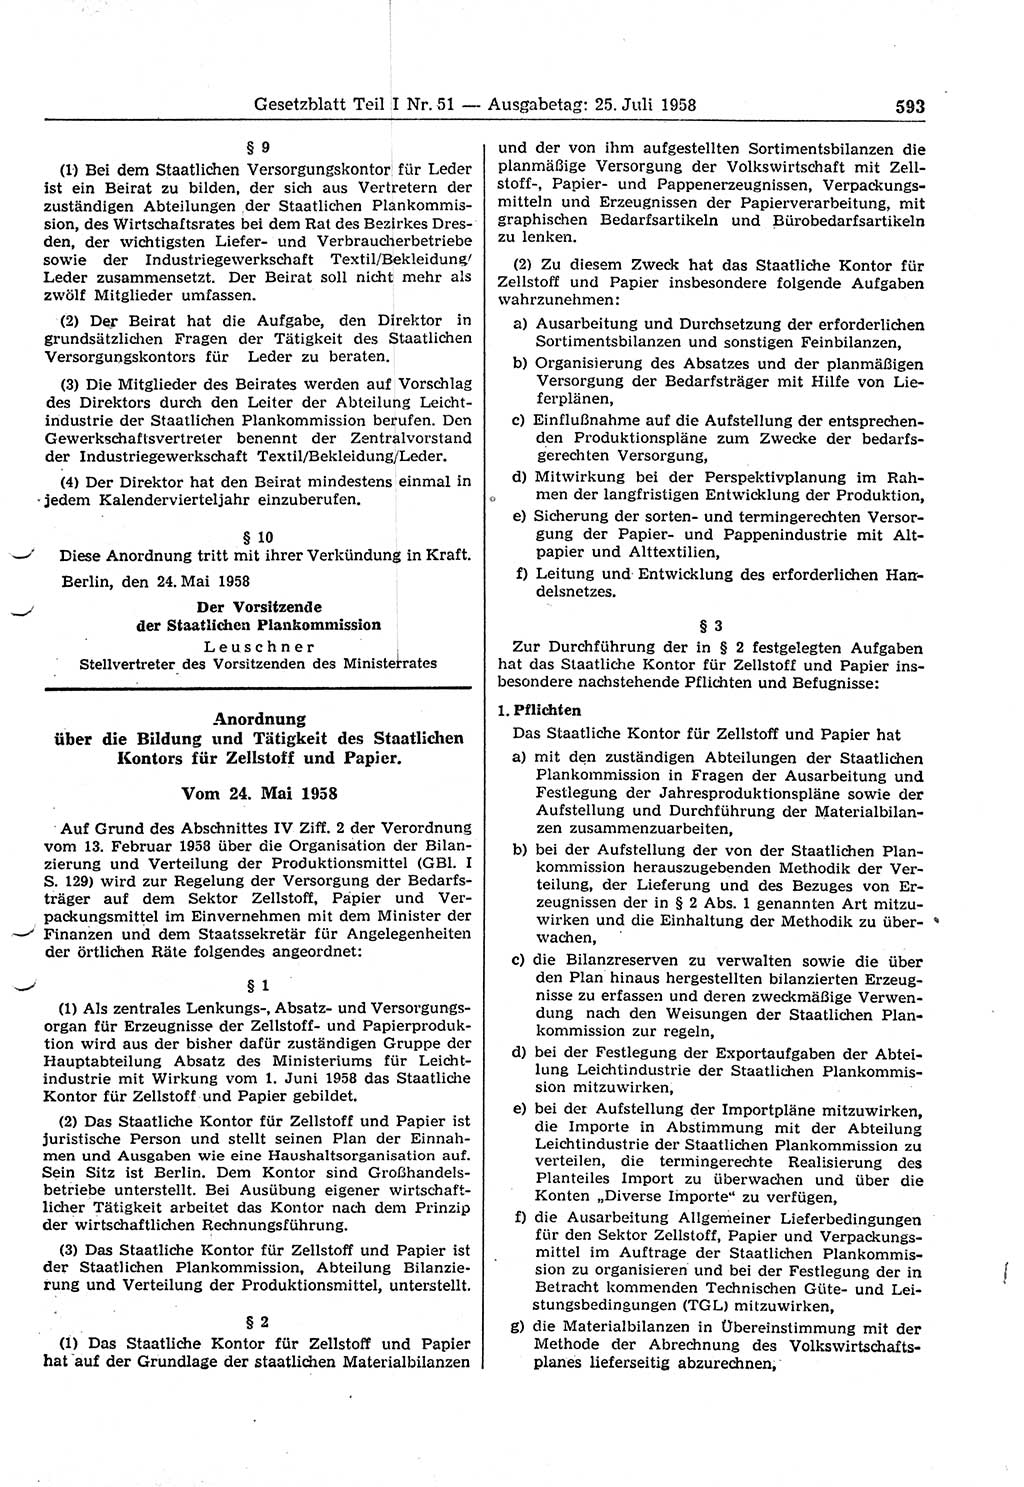 Gesetzblatt (GBl.) der Deutschen Demokratischen Republik (DDR) Teil Ⅰ 1958, Seite 593 (GBl. DDR Ⅰ 1958, S. 593)